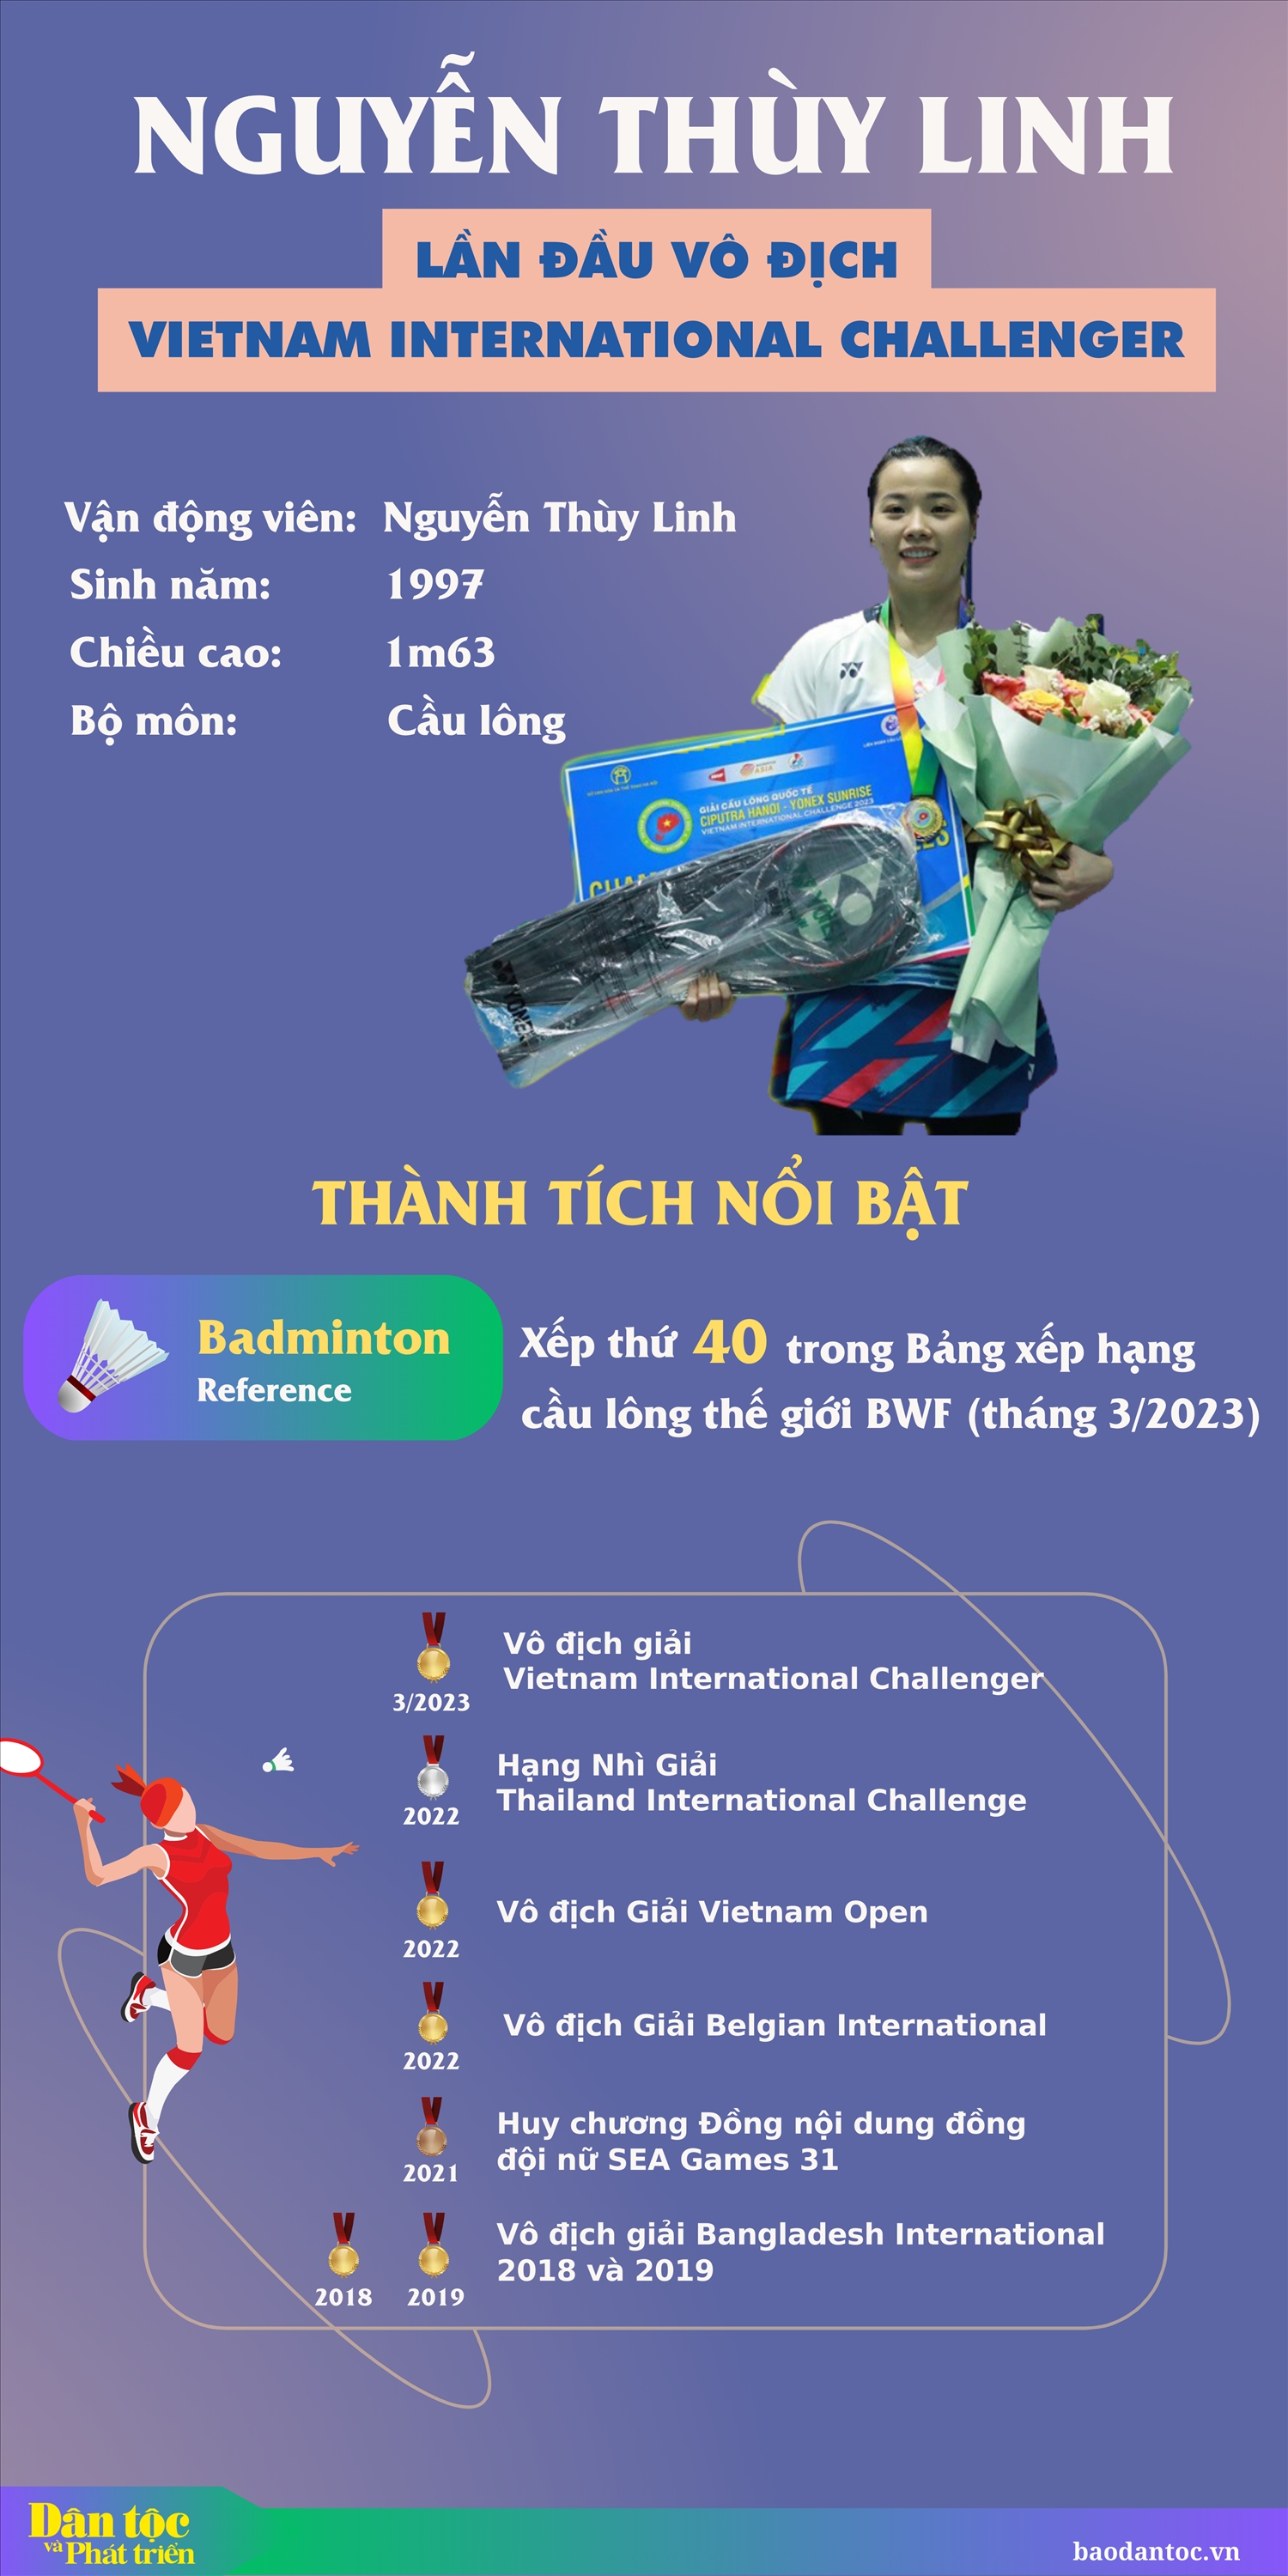 (c) Nguyễn Thùy Linh lần đầu vô địch Vietnam International Challenger